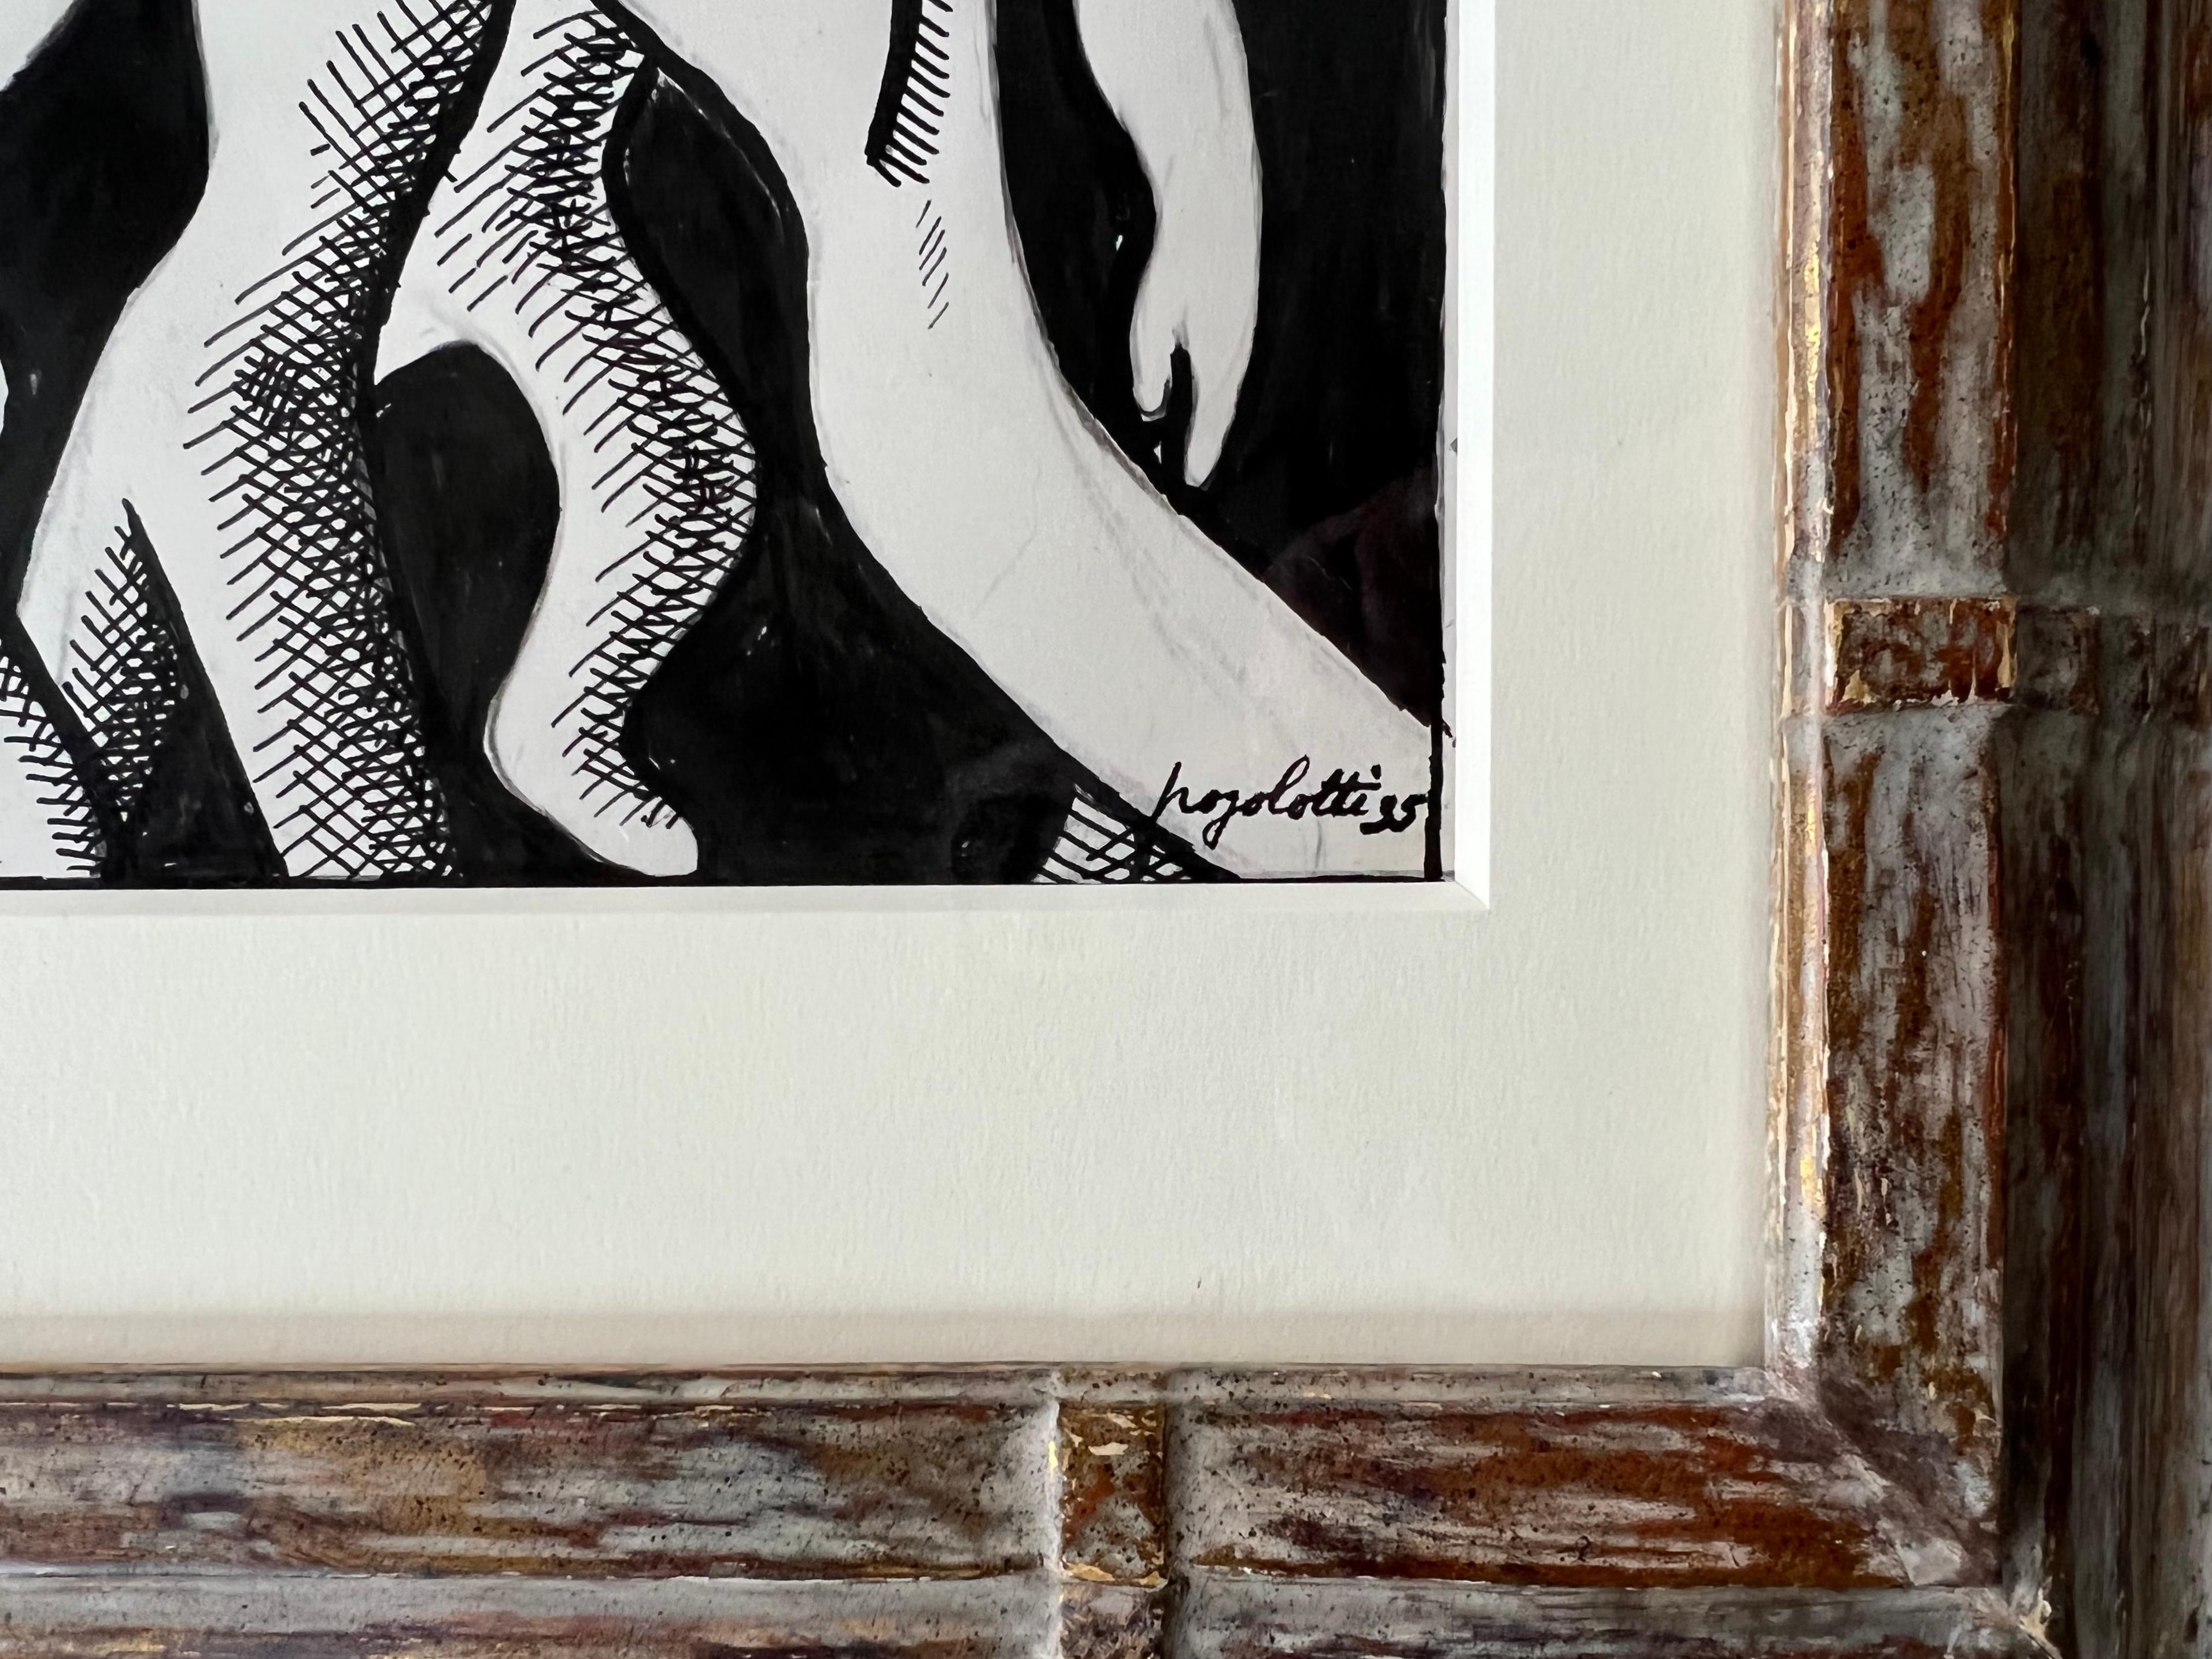 « Steel Factory » Cuban Mid 20th Century Modern Drawing WPA Latin Art Industrial

Encre sur papier. 12 x 19 pouces. Pogolotti a vécu à Paris dans les années 1930. Le dessin présenté ici provient de la Collectional de son ophtalmologue parisien, le